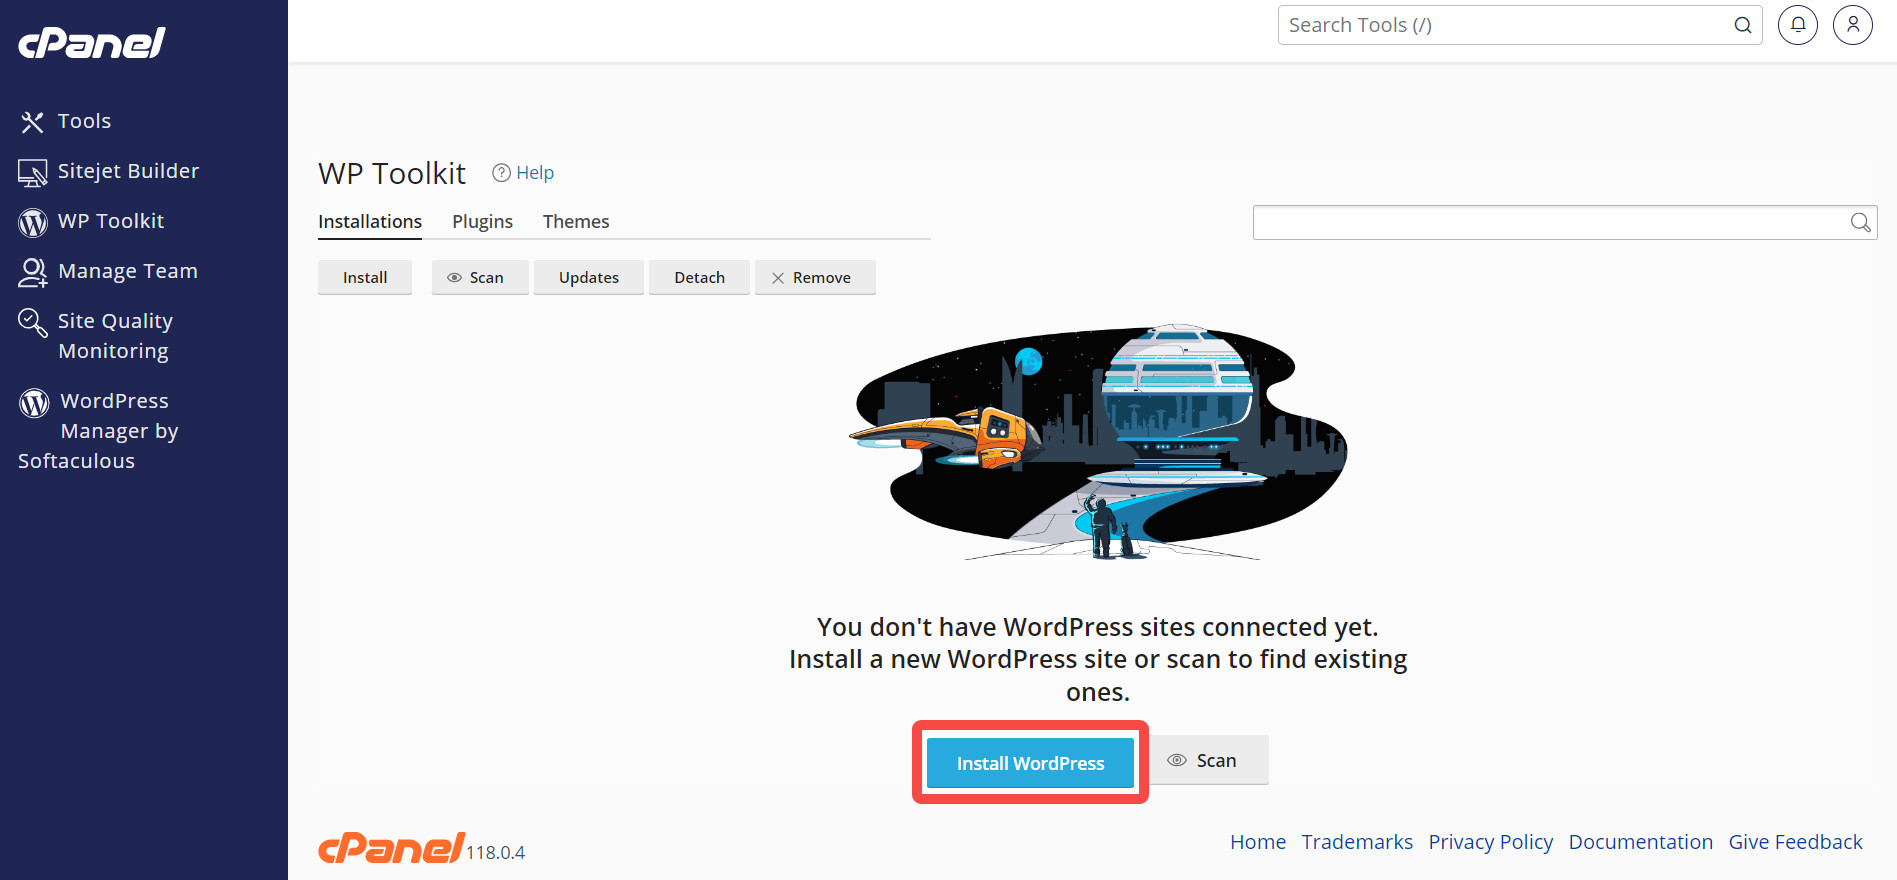 Chọn Install WordPress để cài đặt WP Toolkit